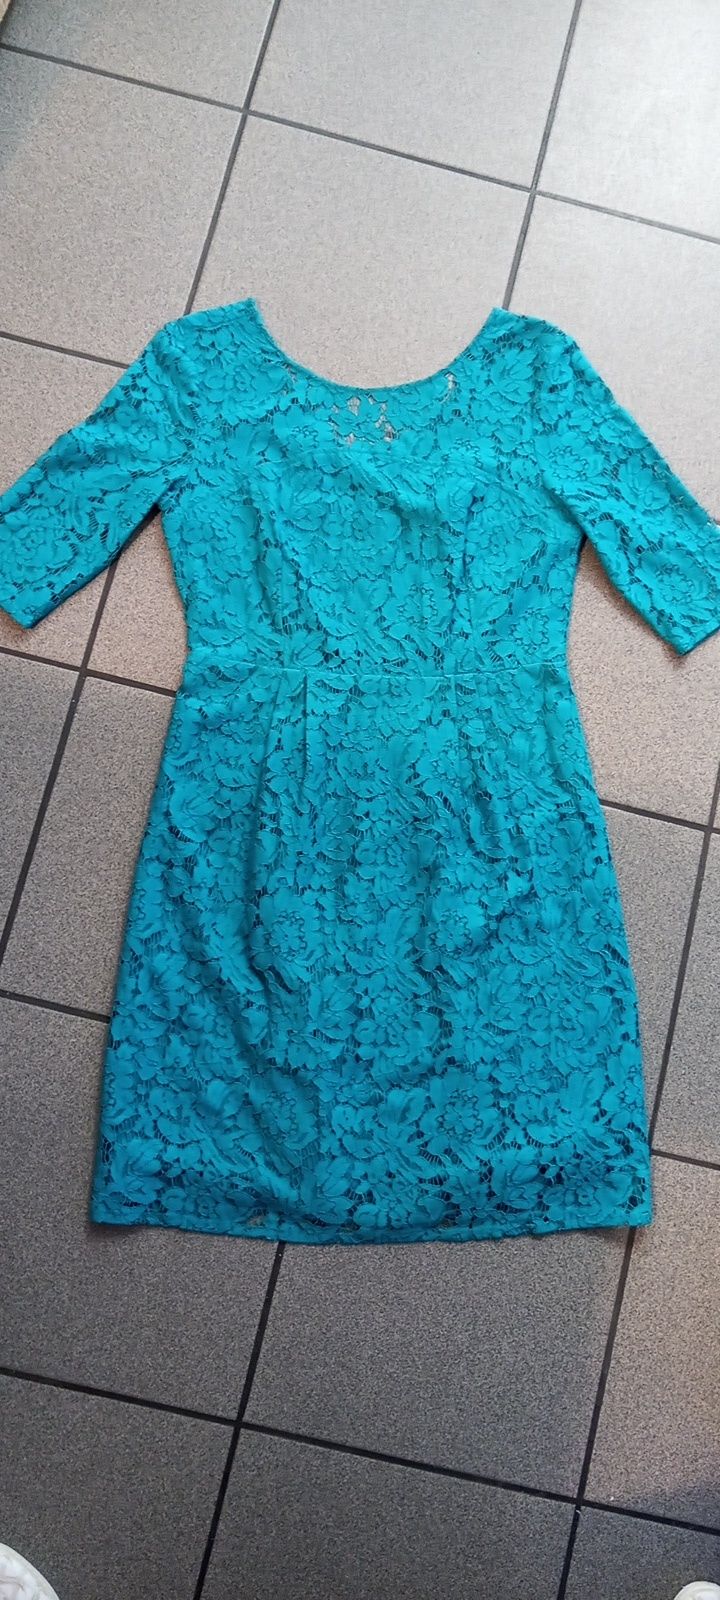 Koronkowa sukienka, rozmiar 36